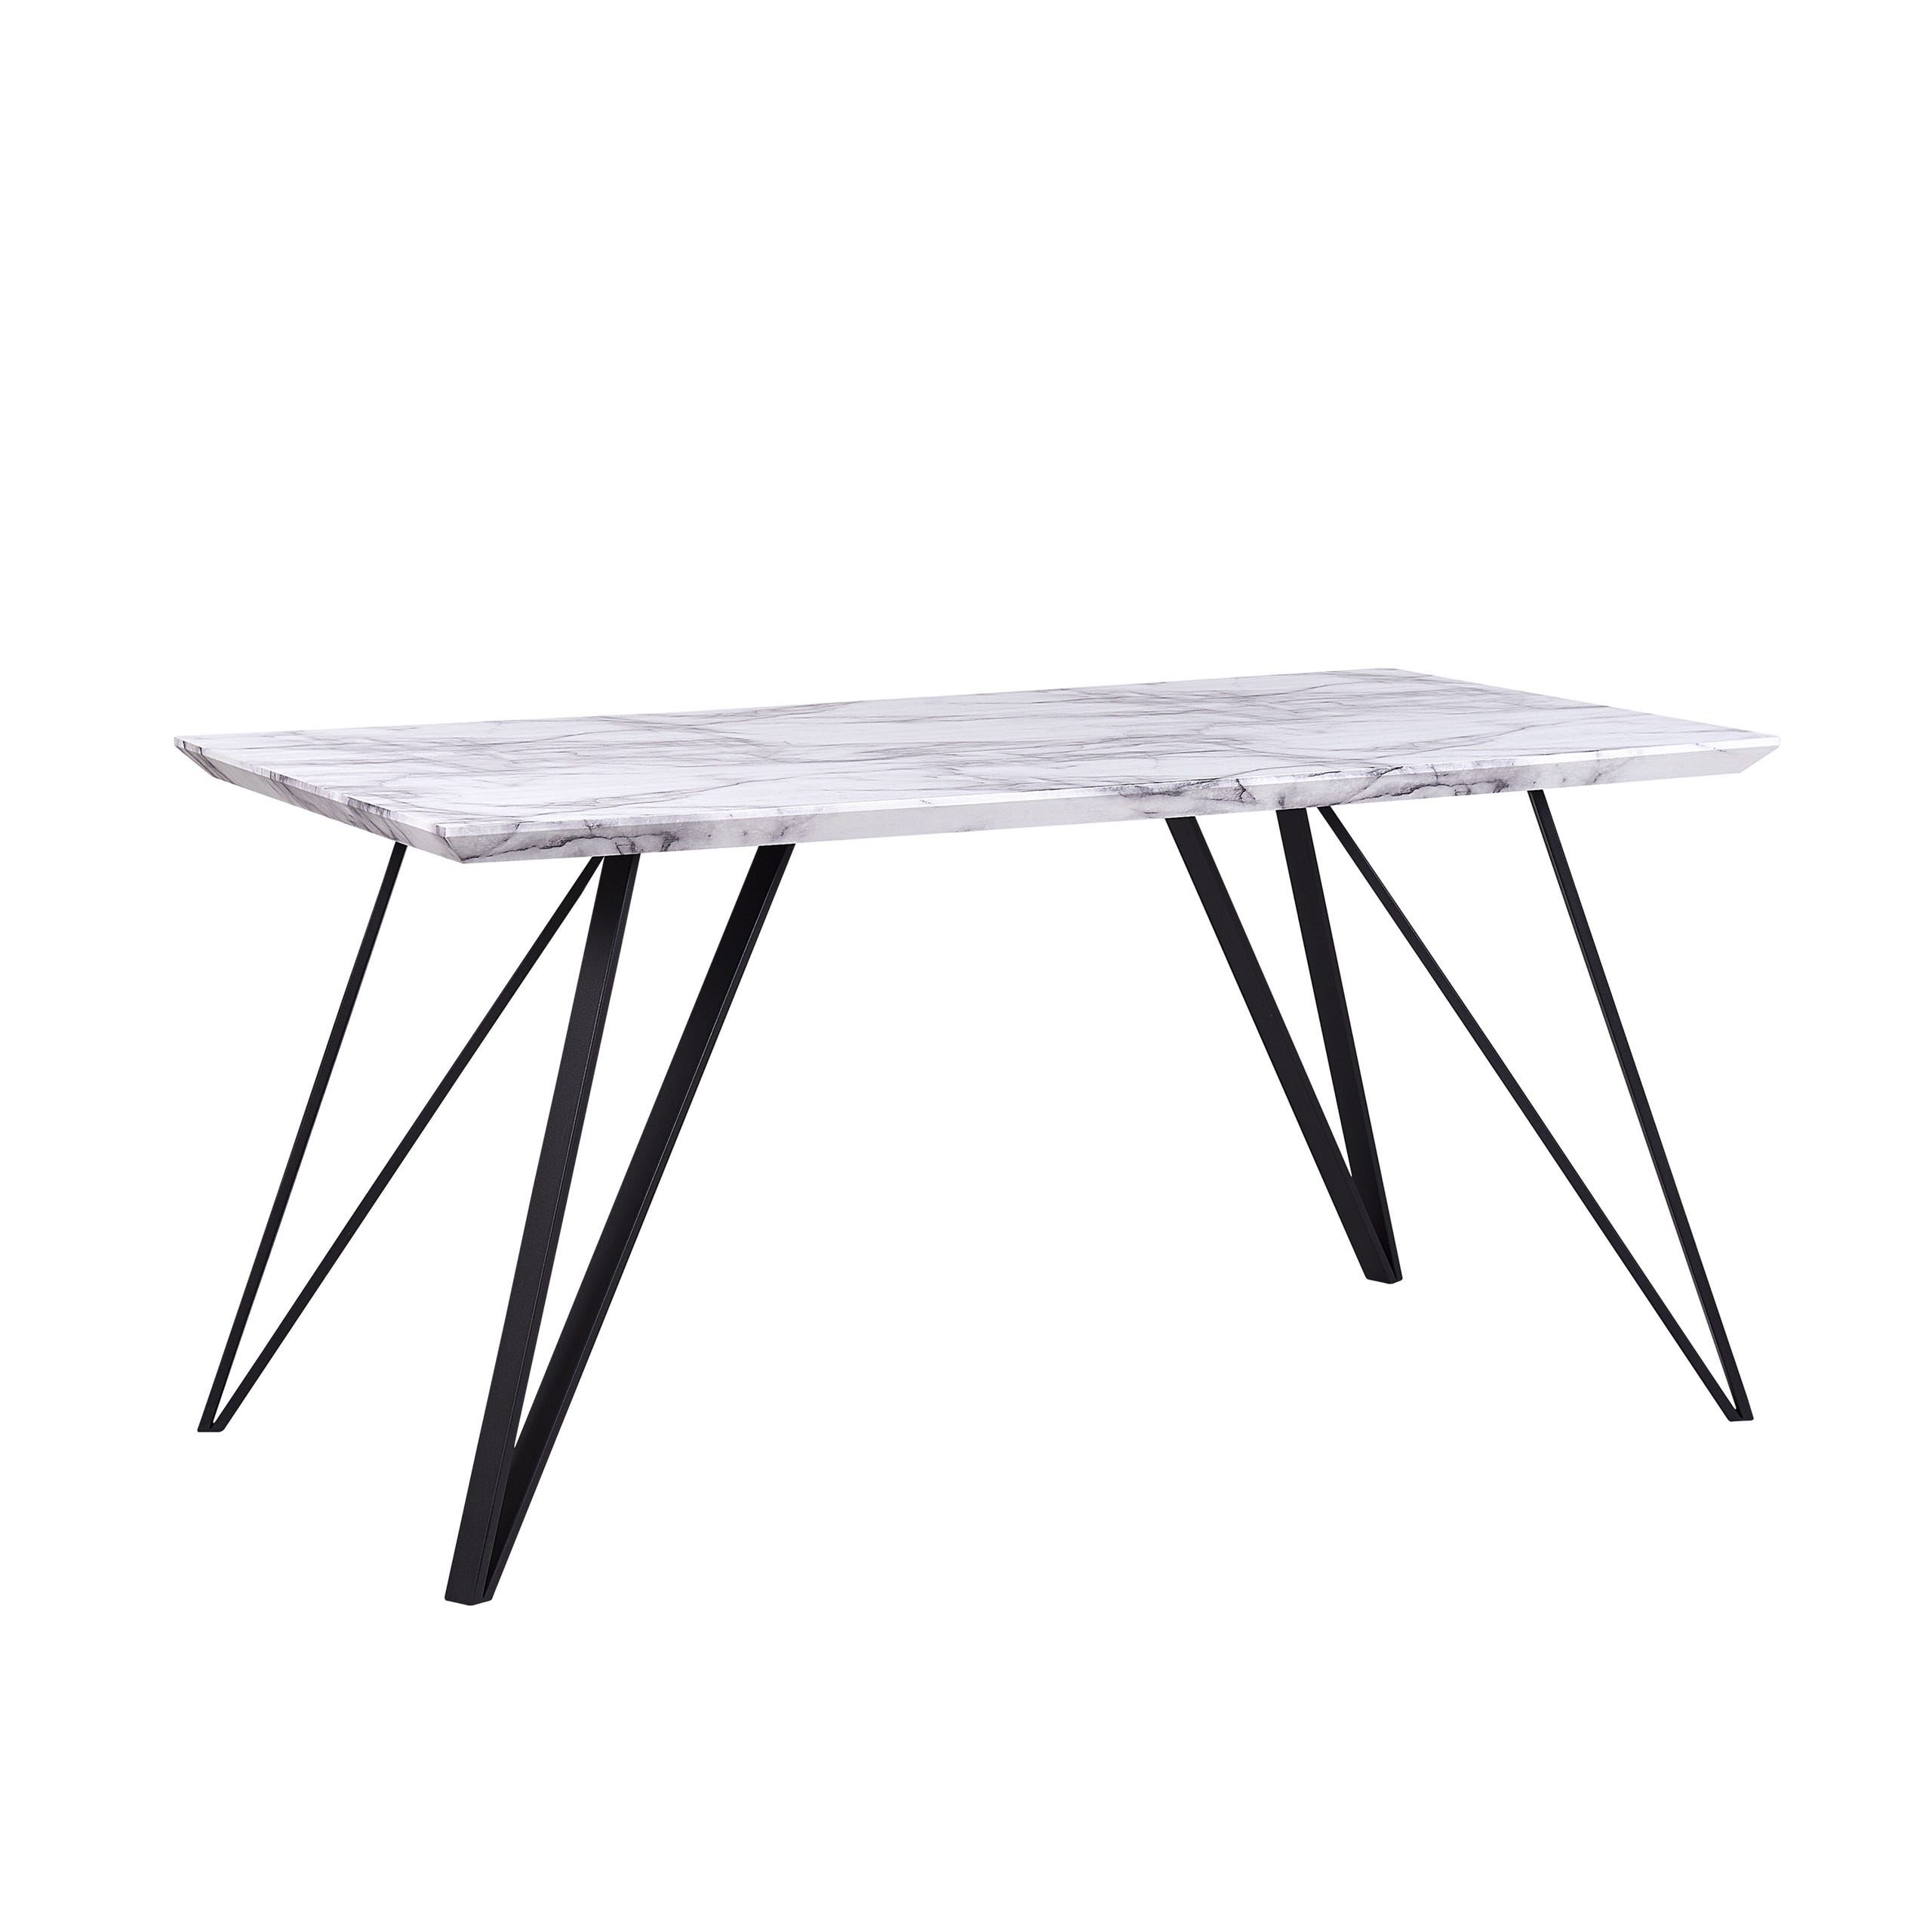 Table à manger rectangulaire en marbre pliable, table pliante